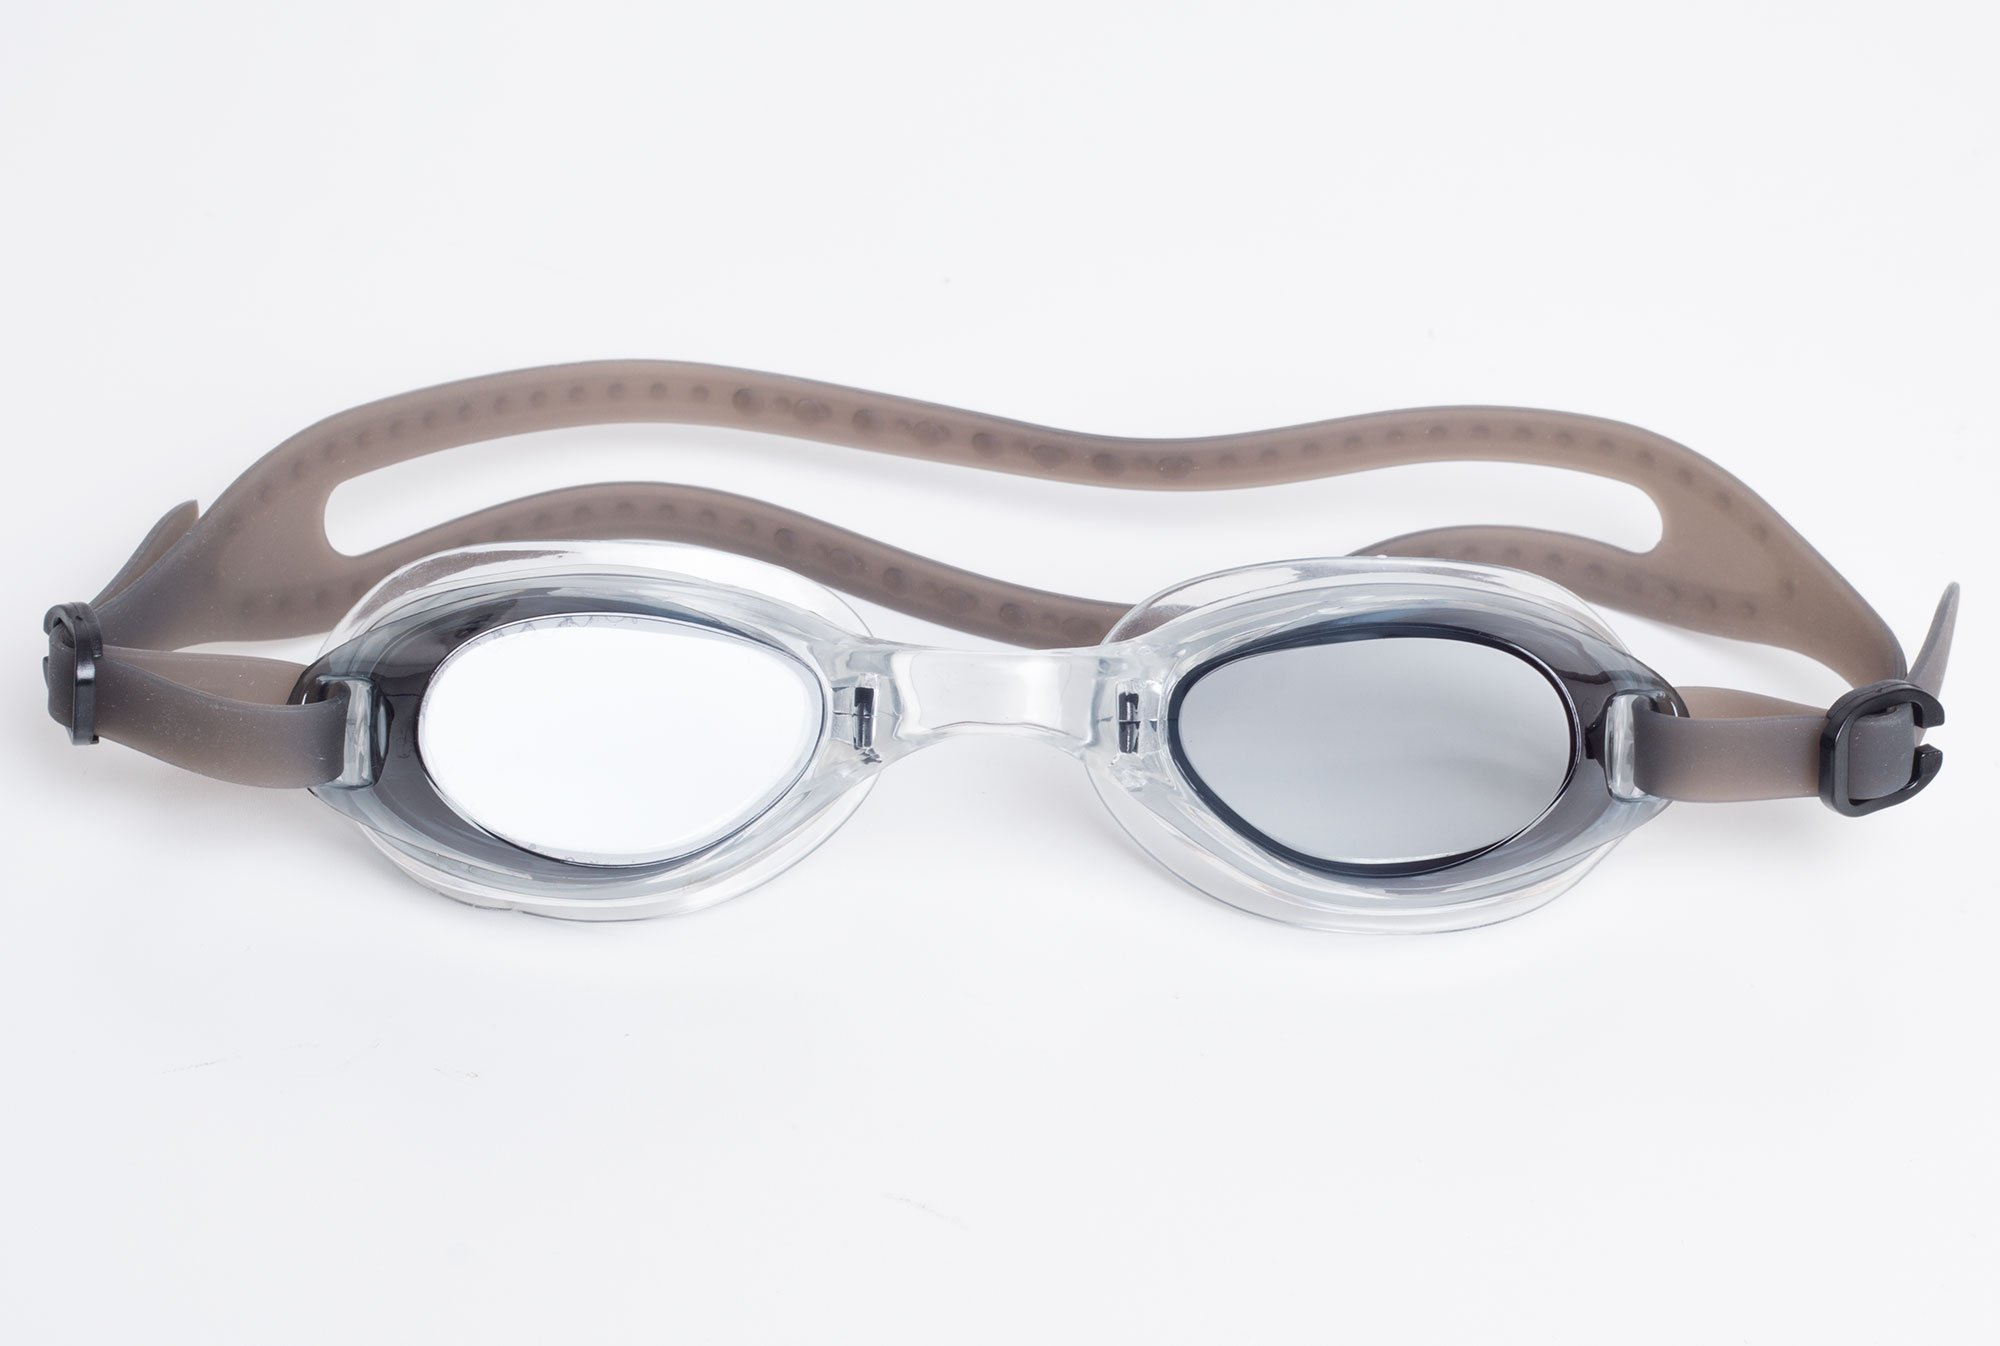 Svømmebriller med klar glas, koks grå fra Mirou